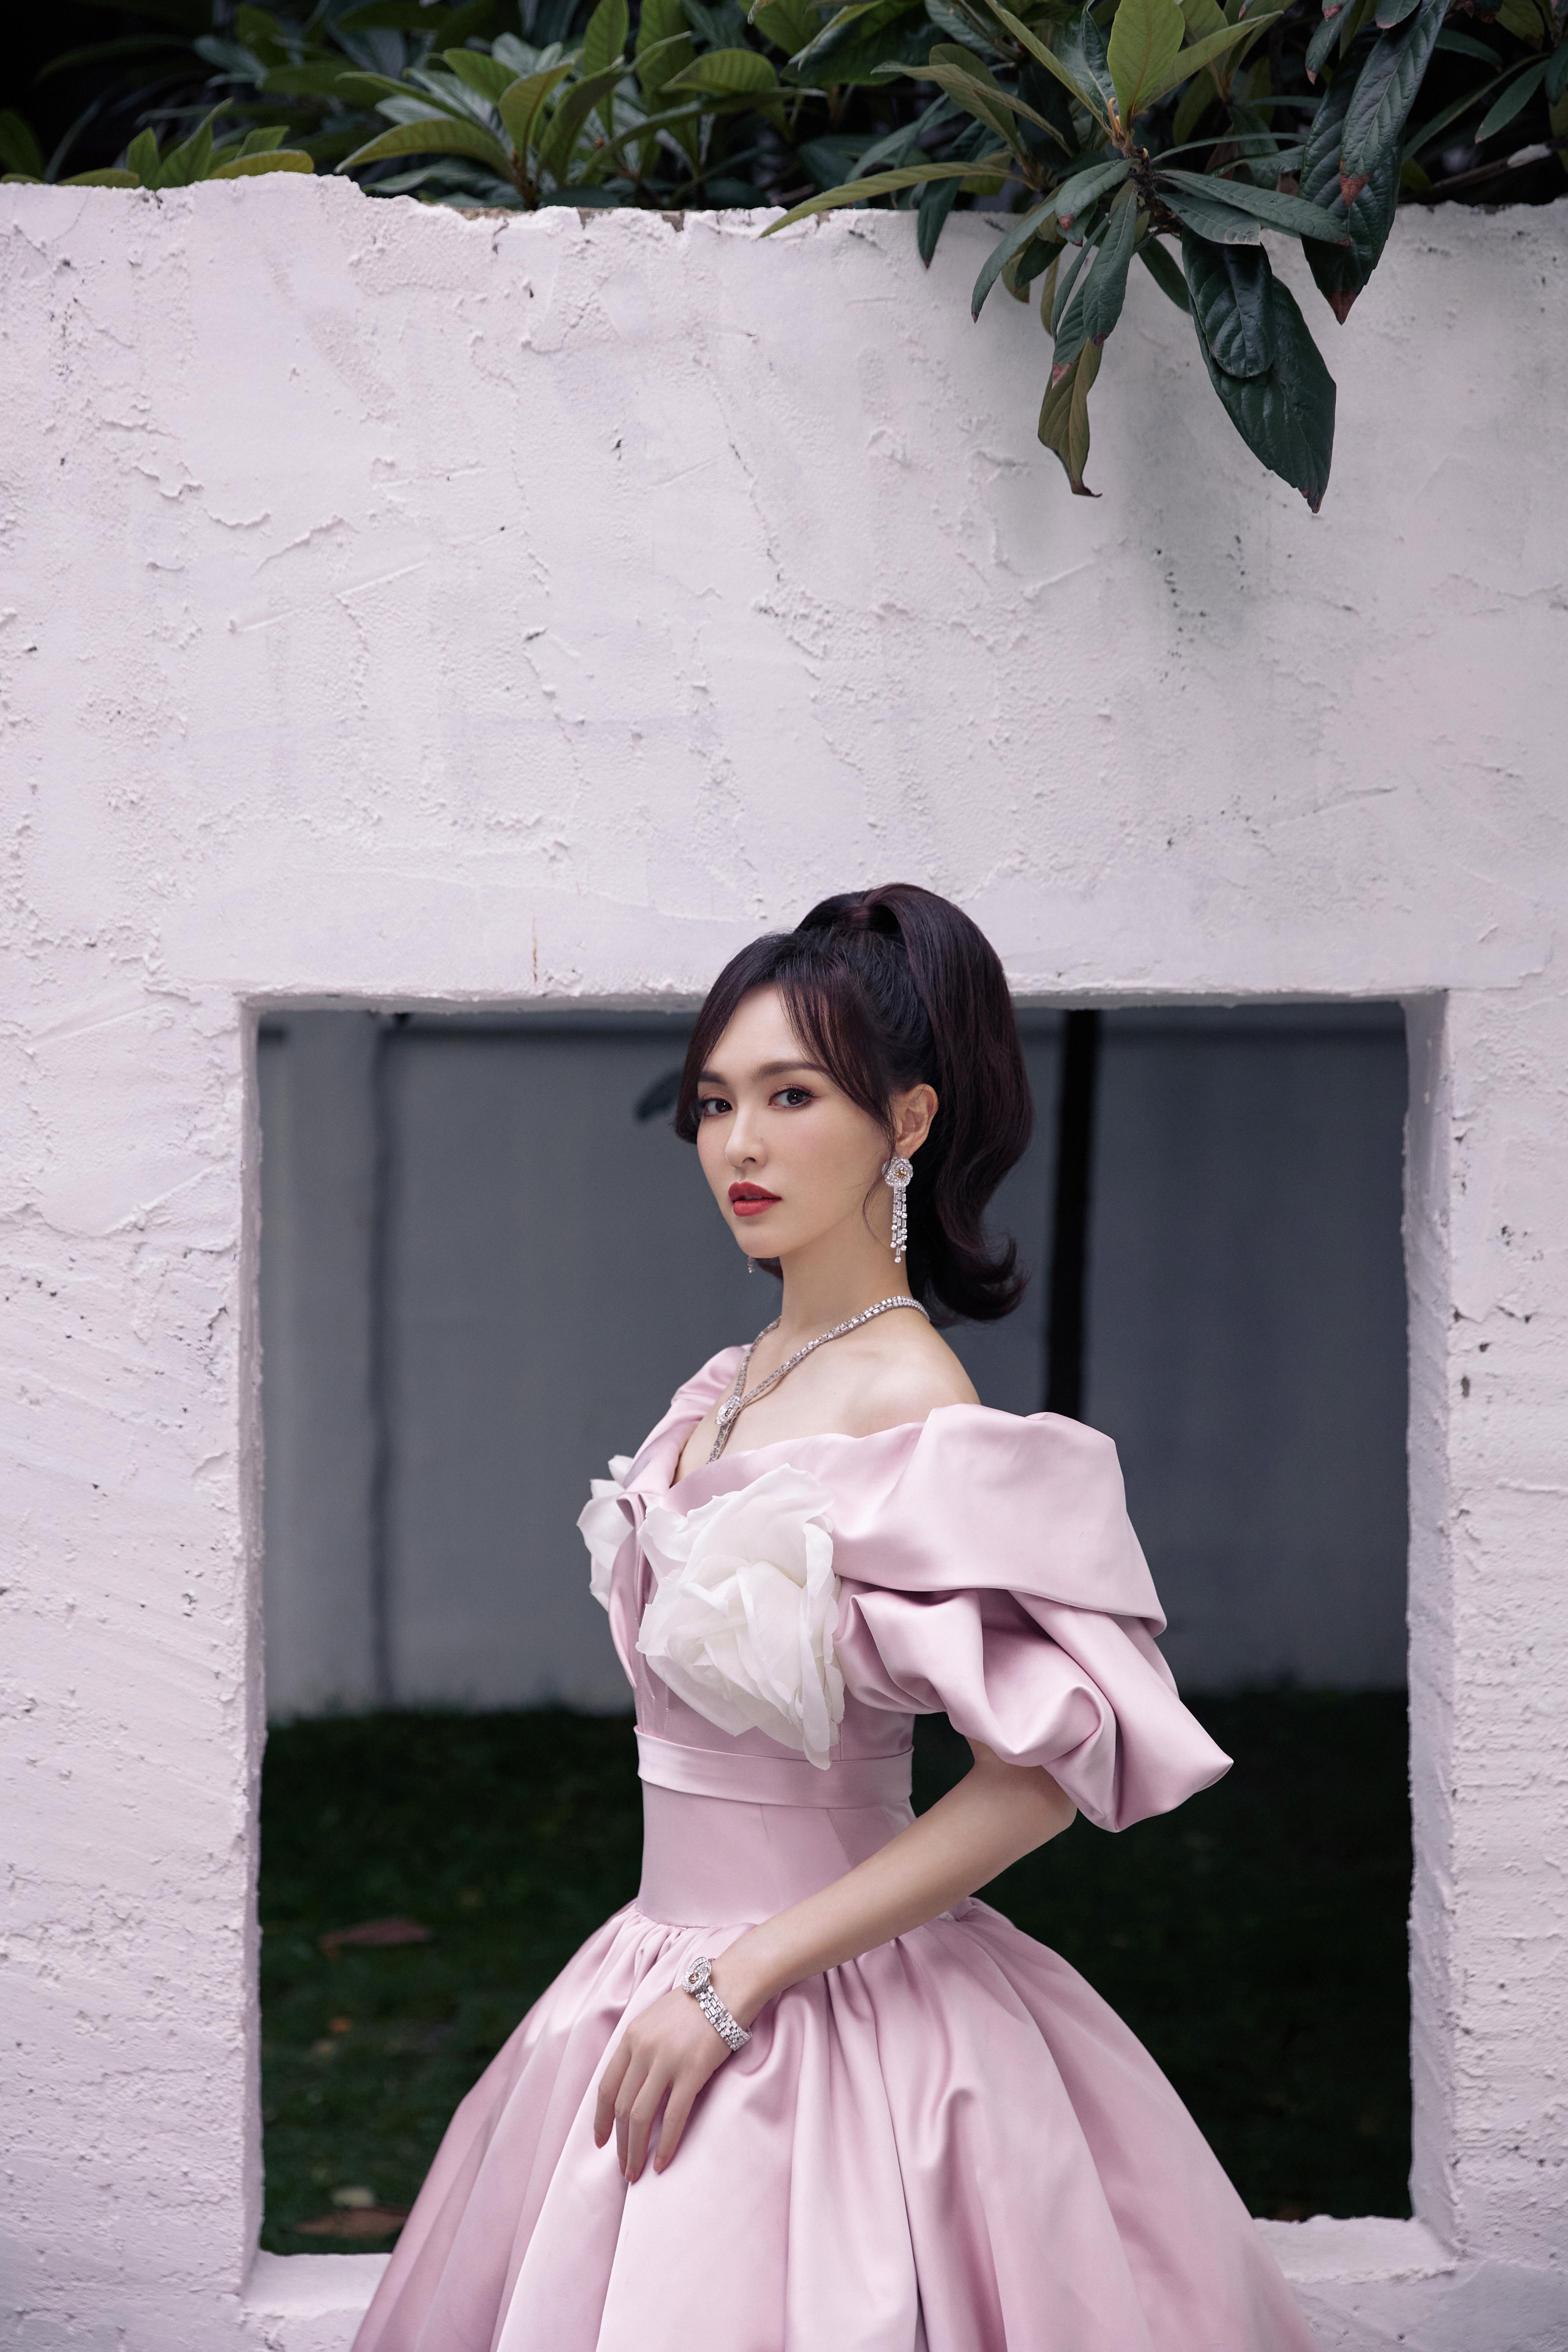 唐嫣粉色束腰裙造型复古优雅 白色大花朵点缀温柔甜美,1 (9)